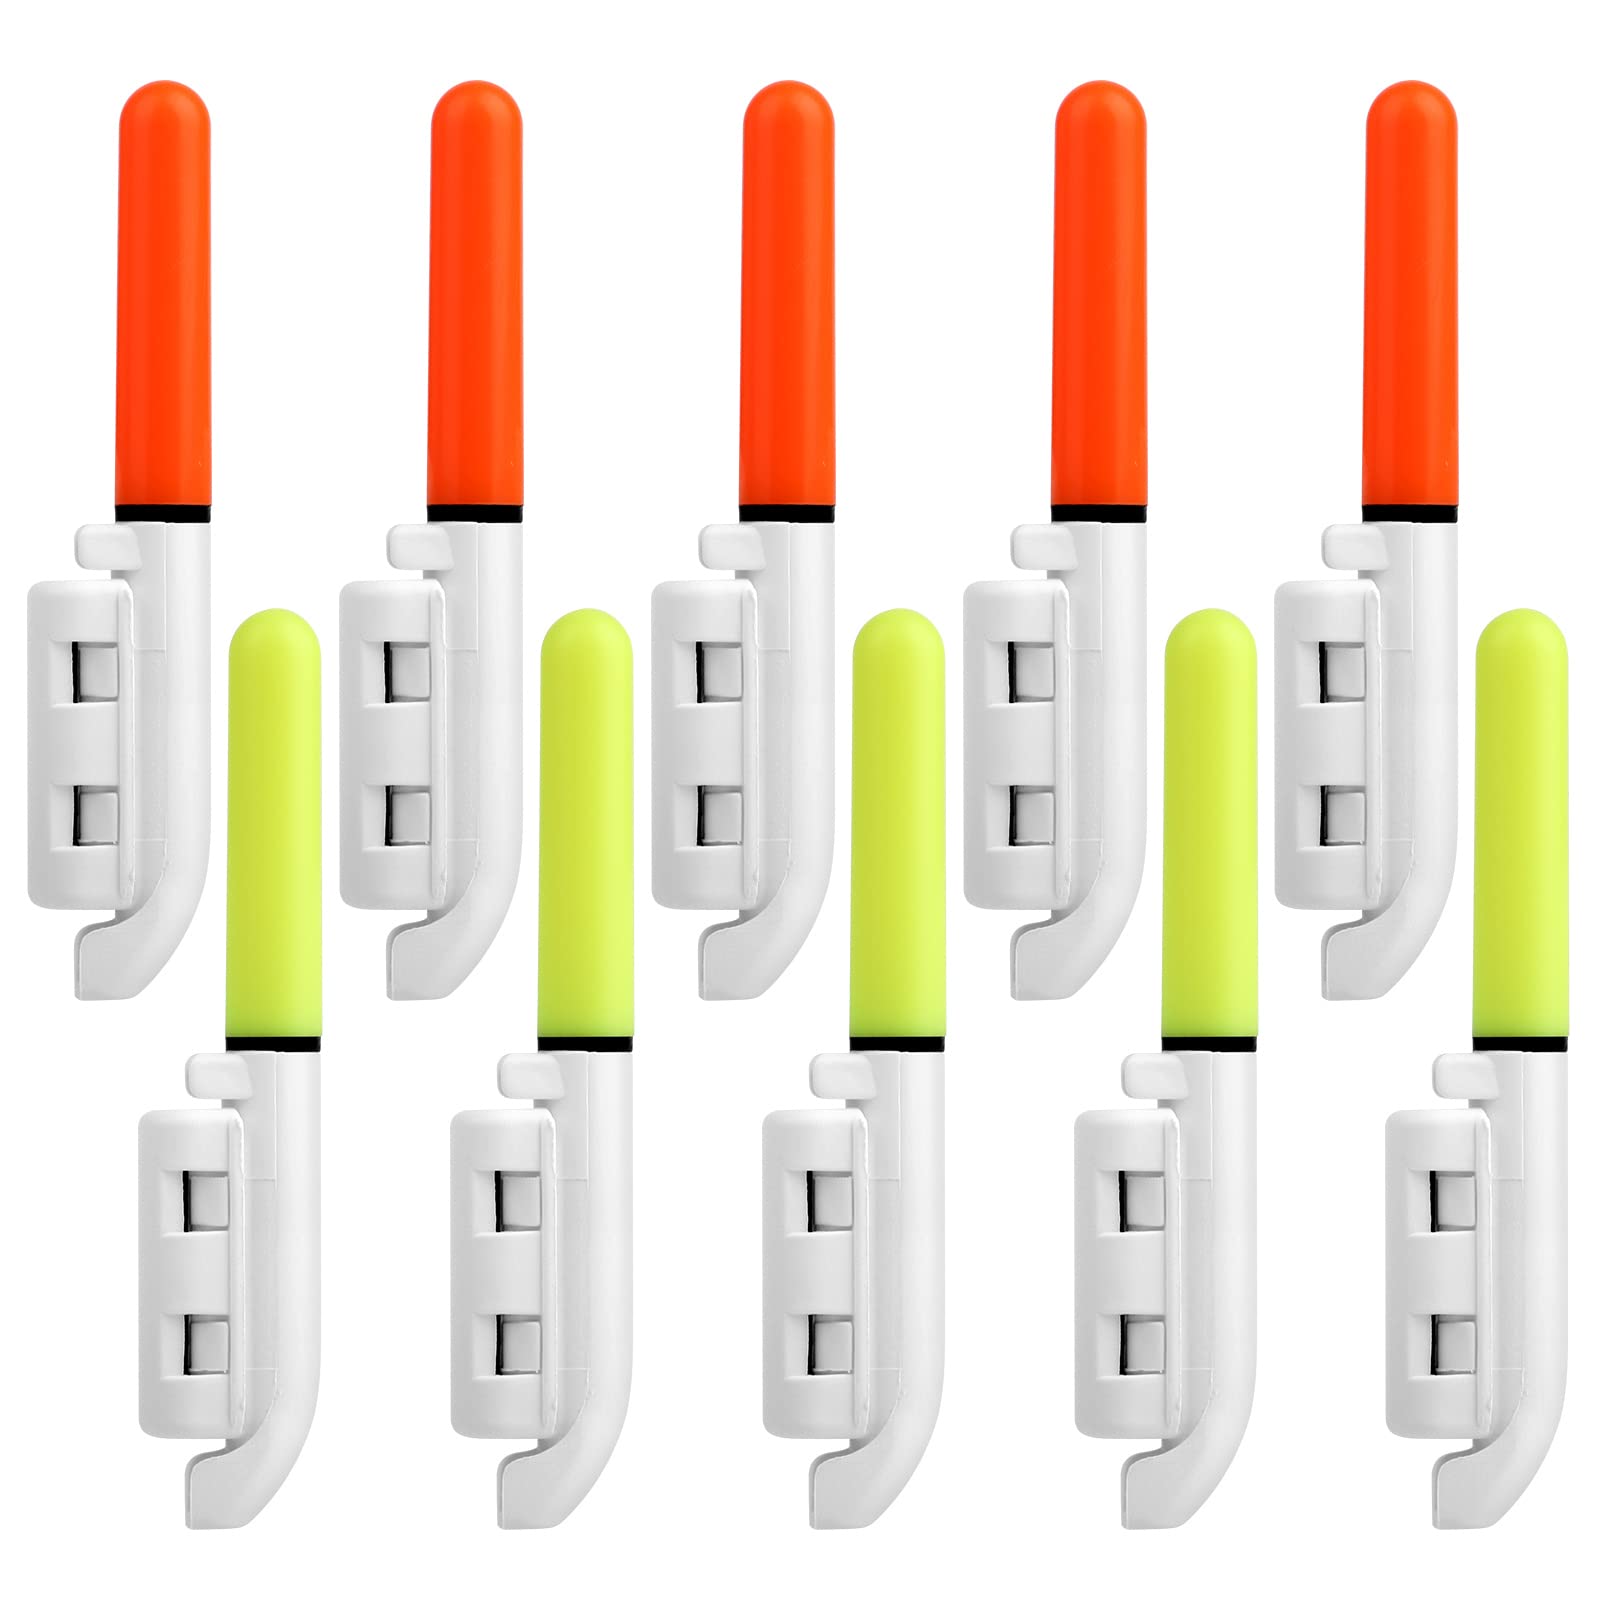 TSV 8 PCS Fishing Glow Sticks, LED Glow Sticks for Fishing, LED